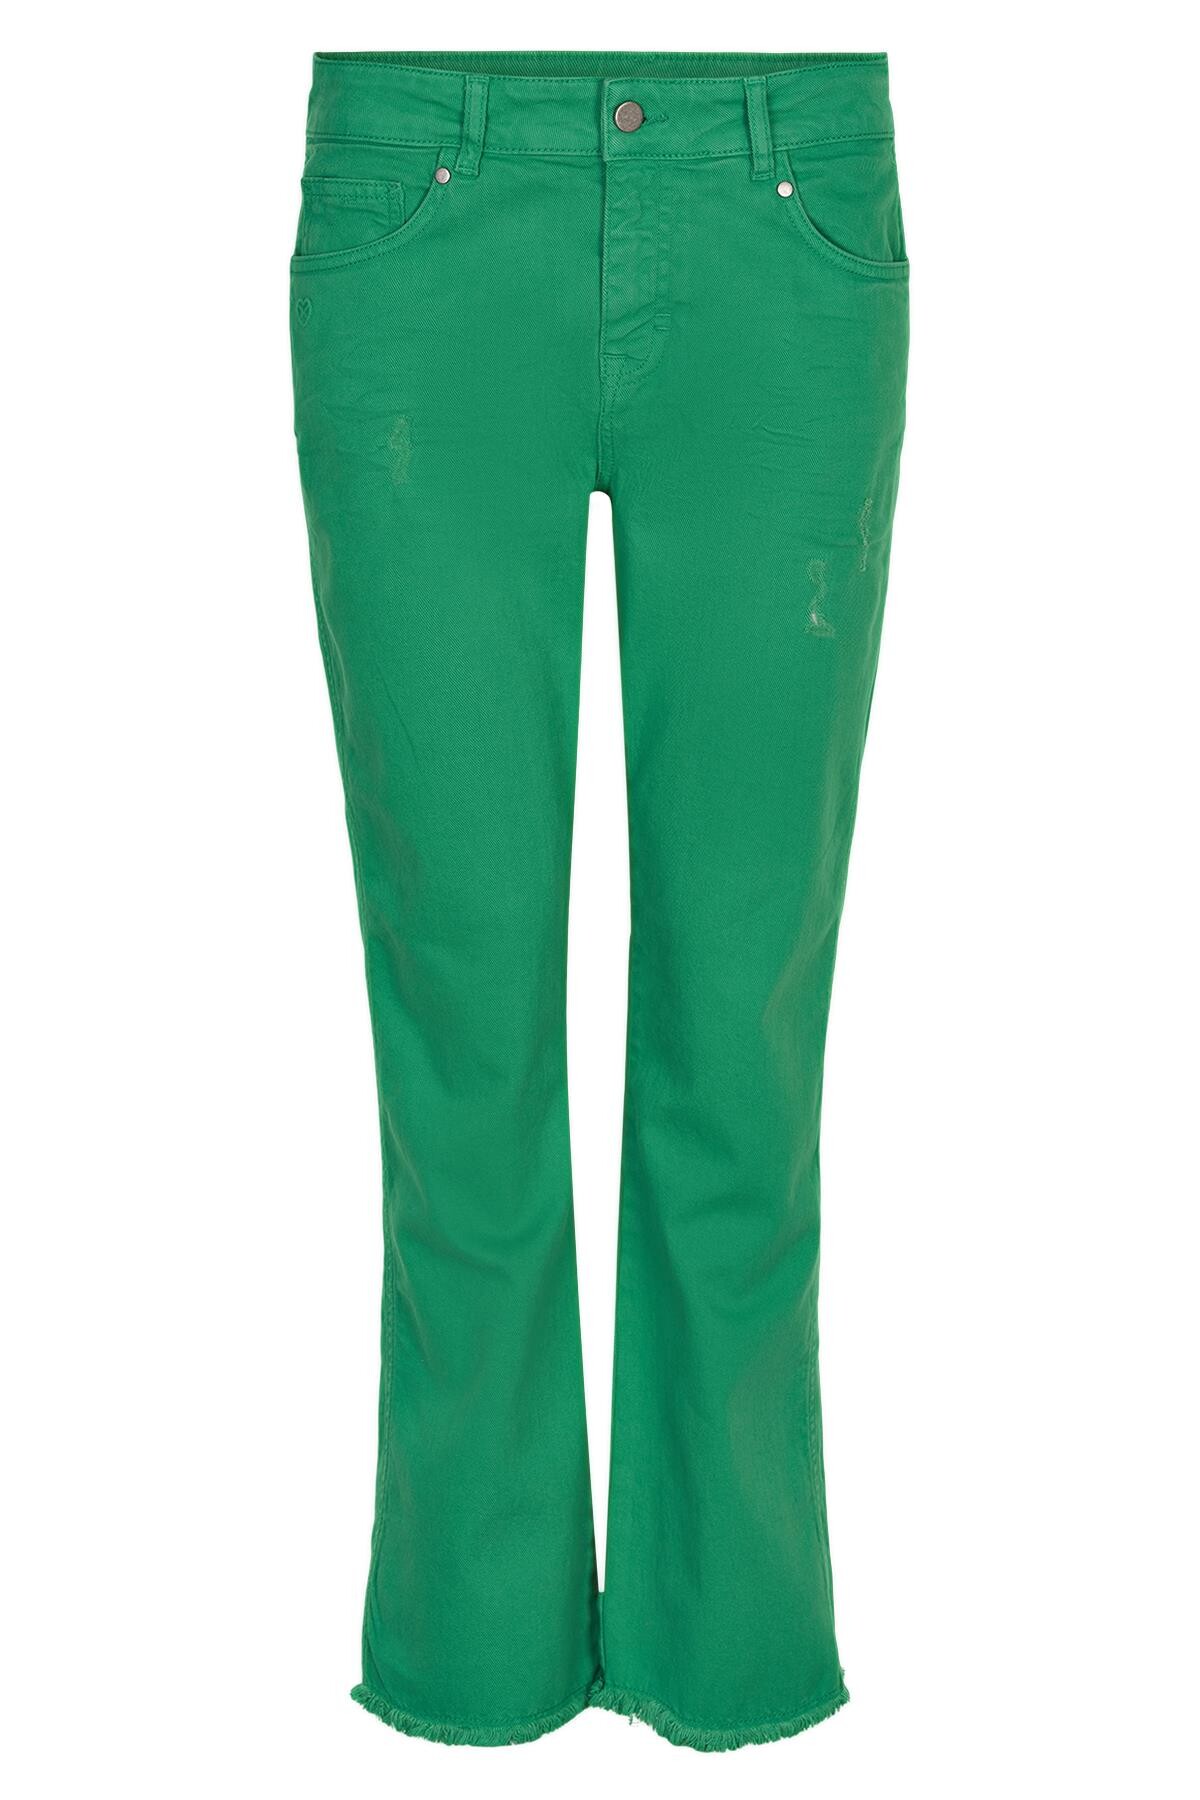 Se IN FRONT Ellie Jeans, Farve: Grass, Størrelse: 44, Dame hos Infront Women